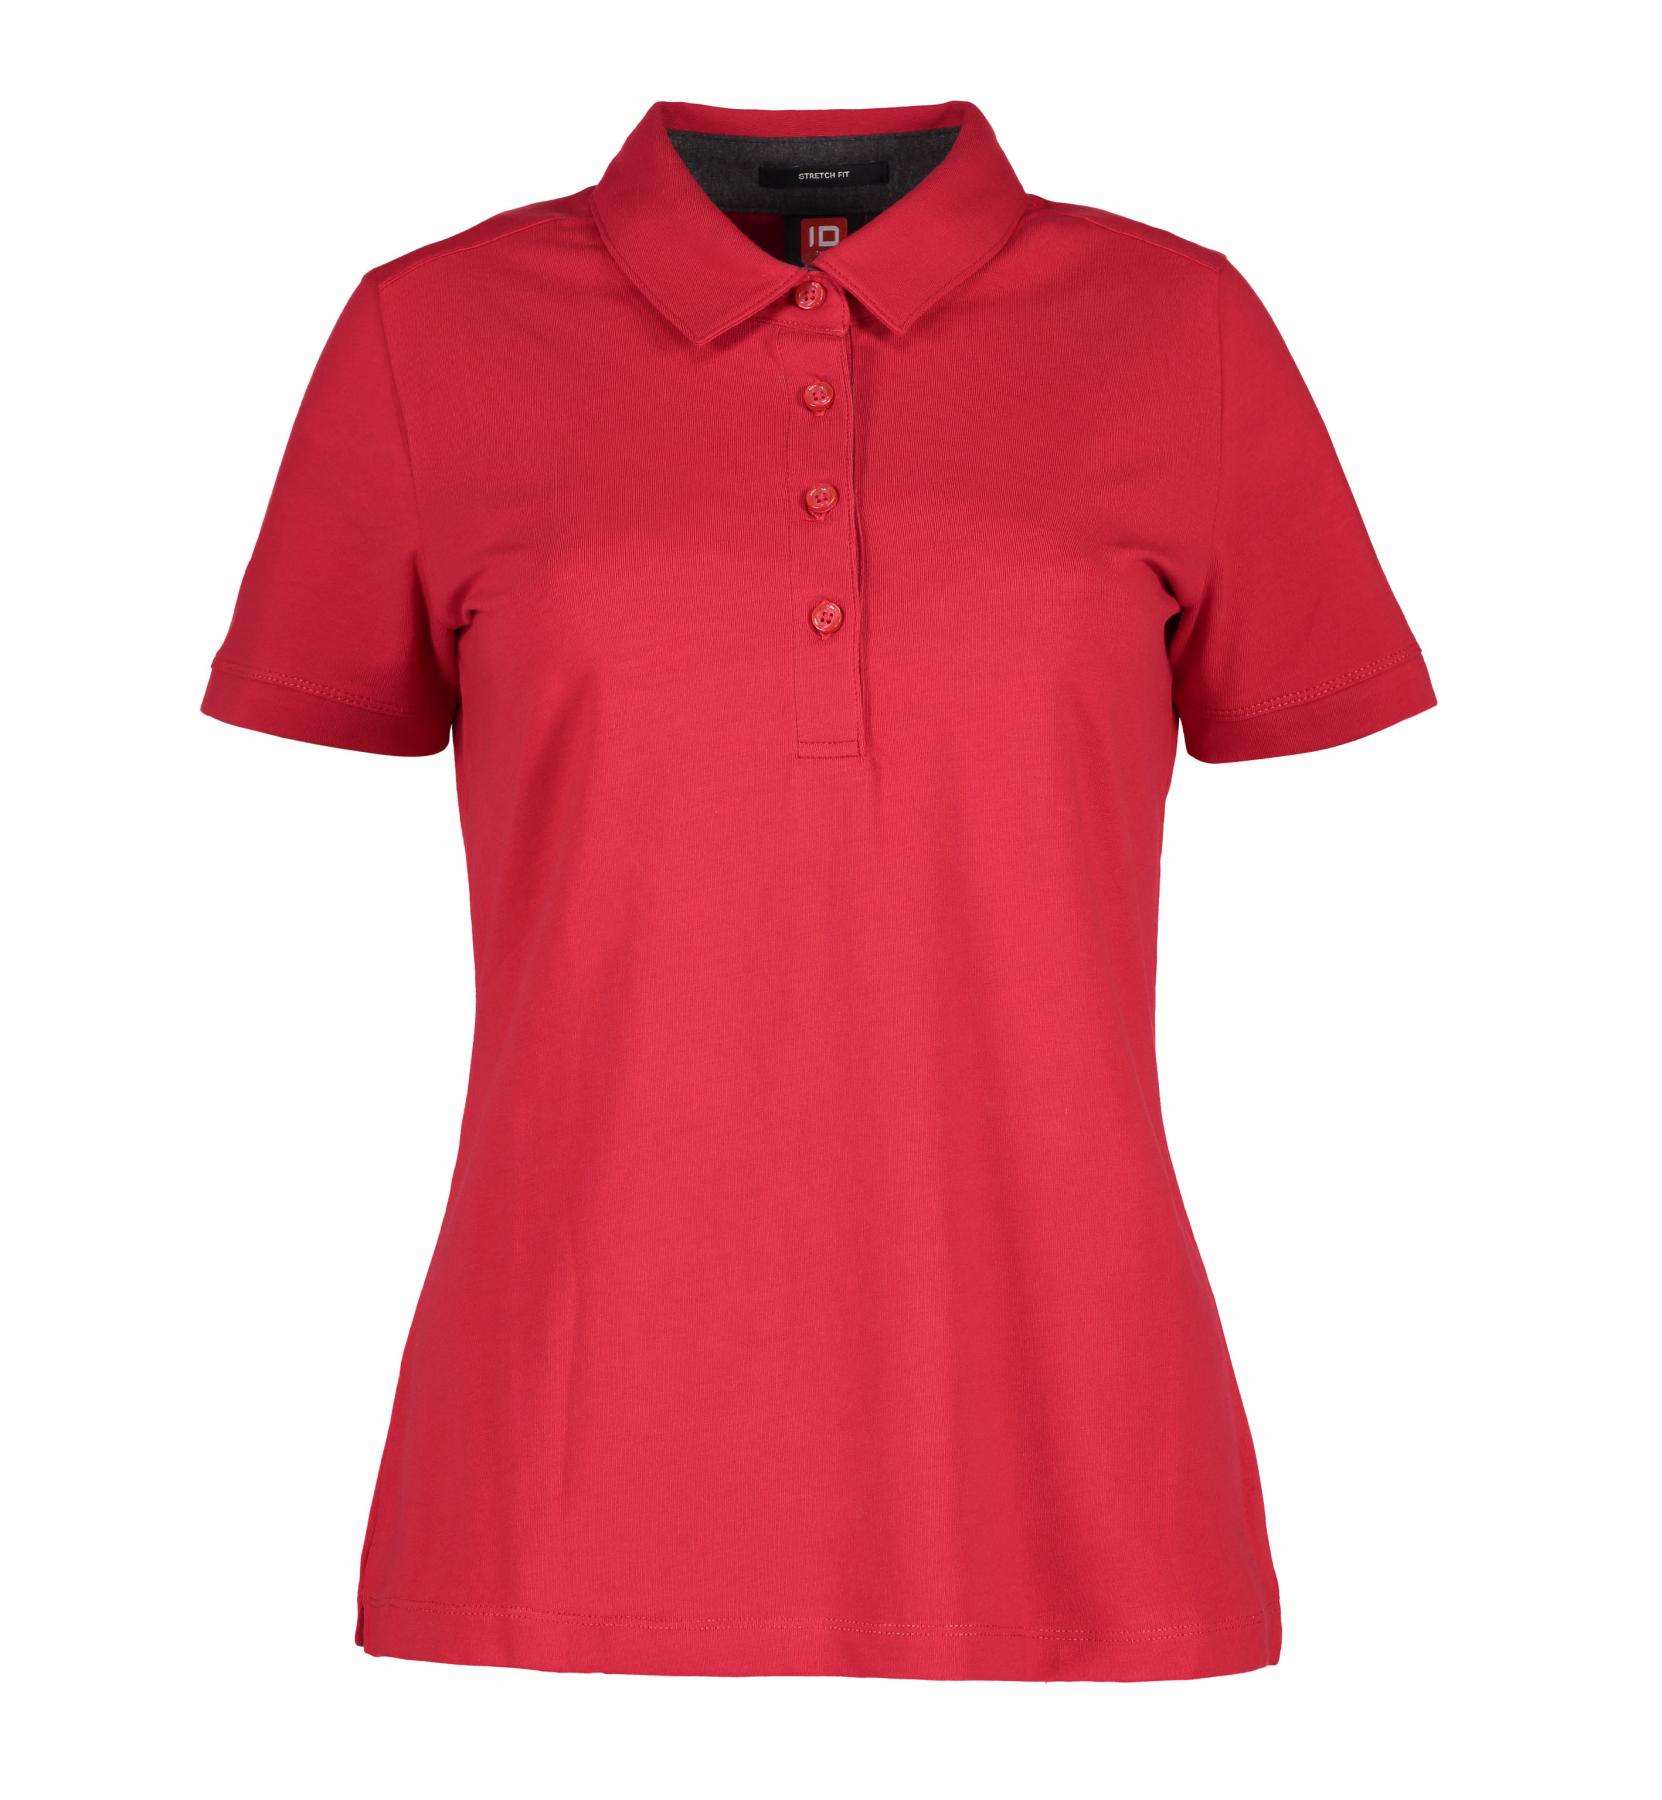 Damen Business Jersey-Poloshirt 185 g/m² ID Identity® Rot XS